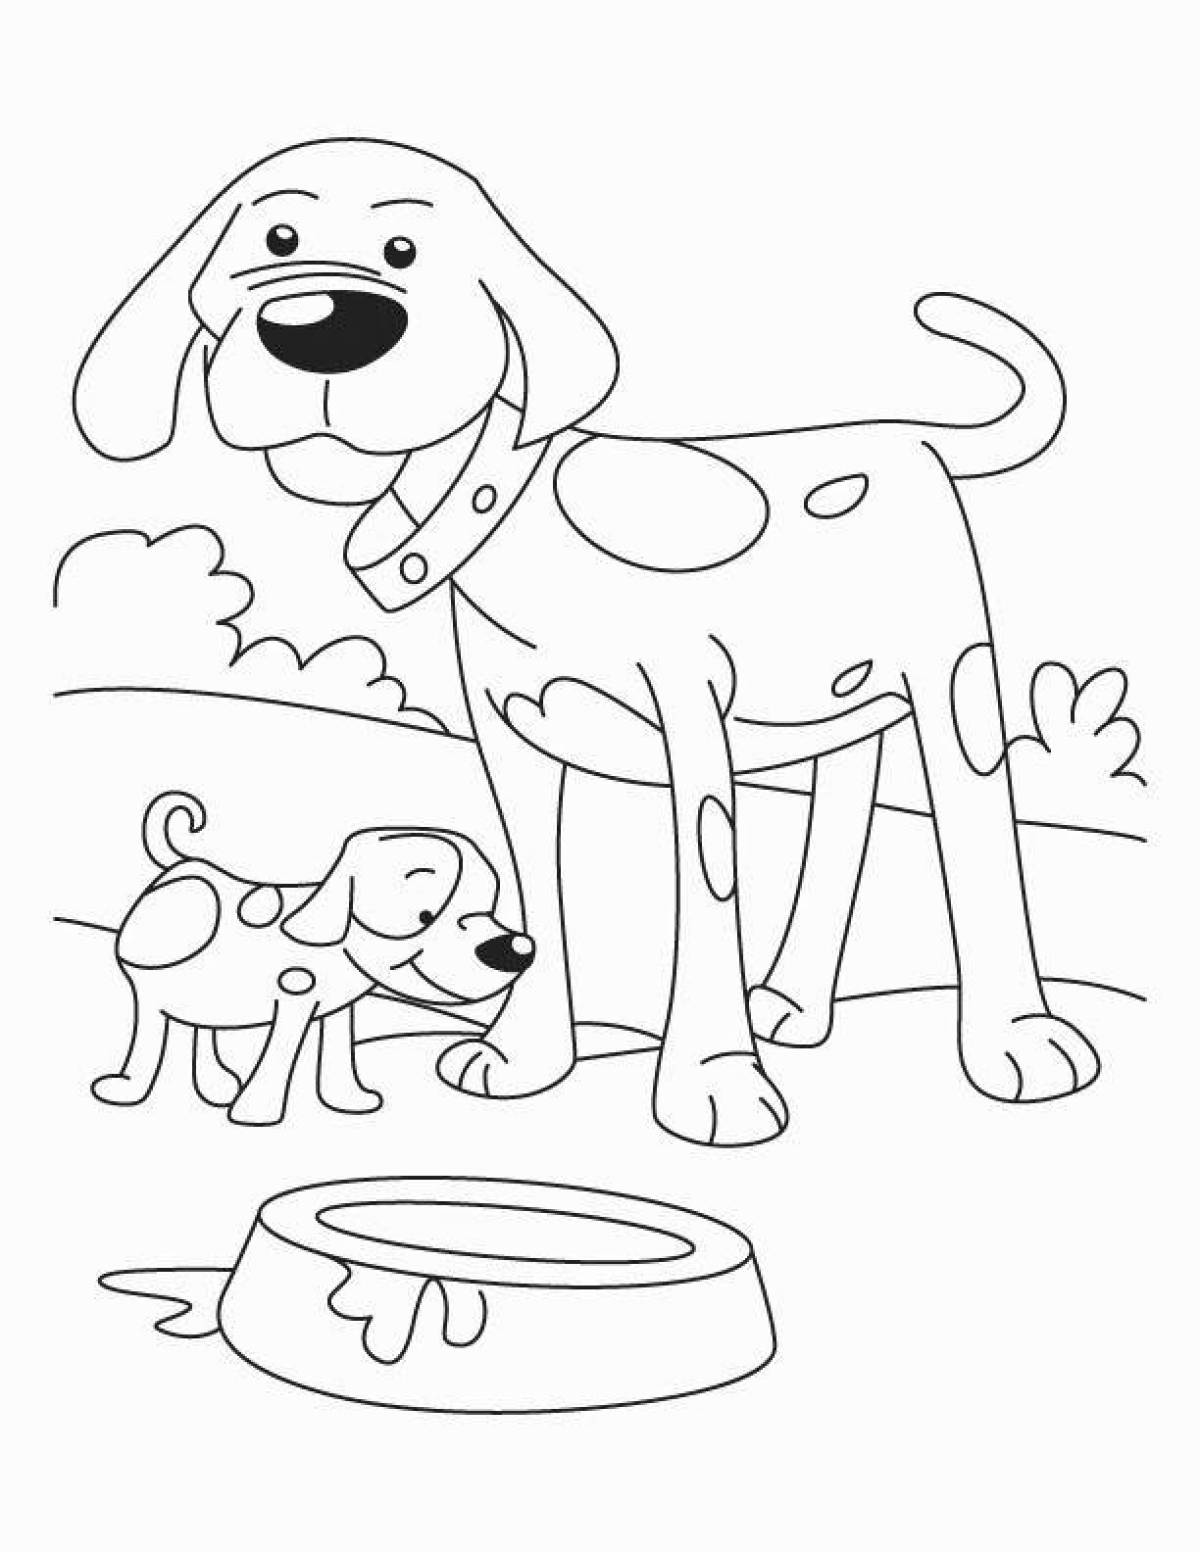 Alert coloring page изображение собаки для детей